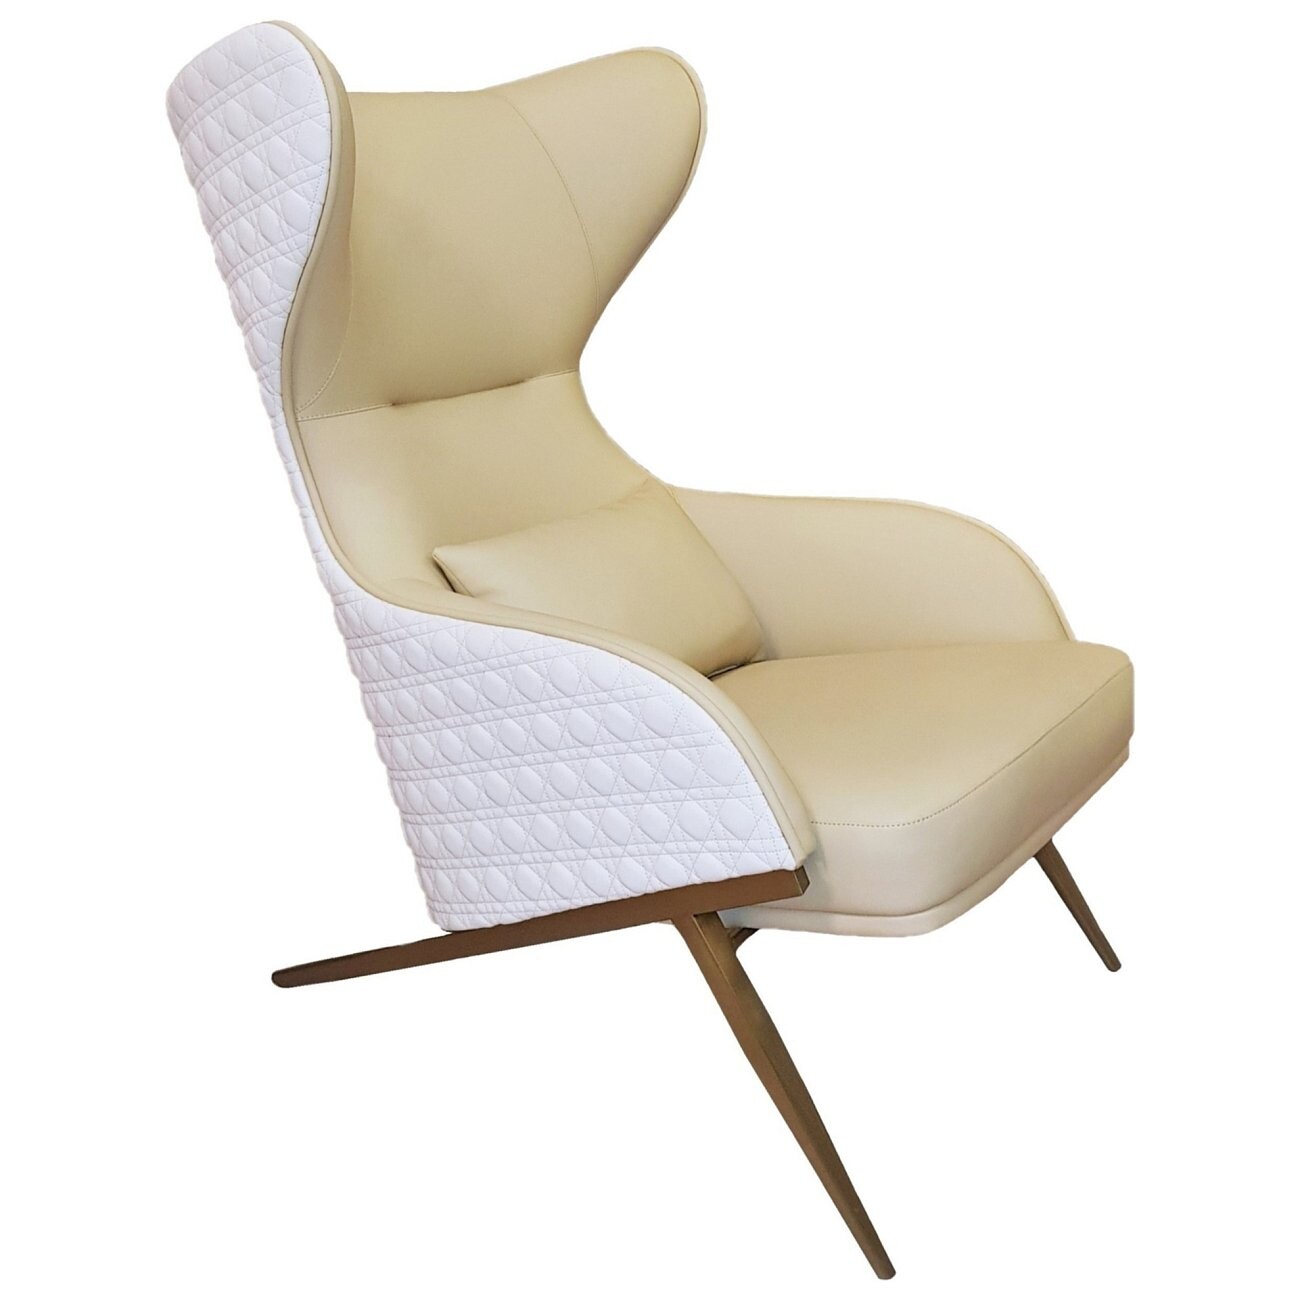 Кресло с ушами желтое, белое TG-334 - купить за 95000 руб винтернет-магазине DG-Home